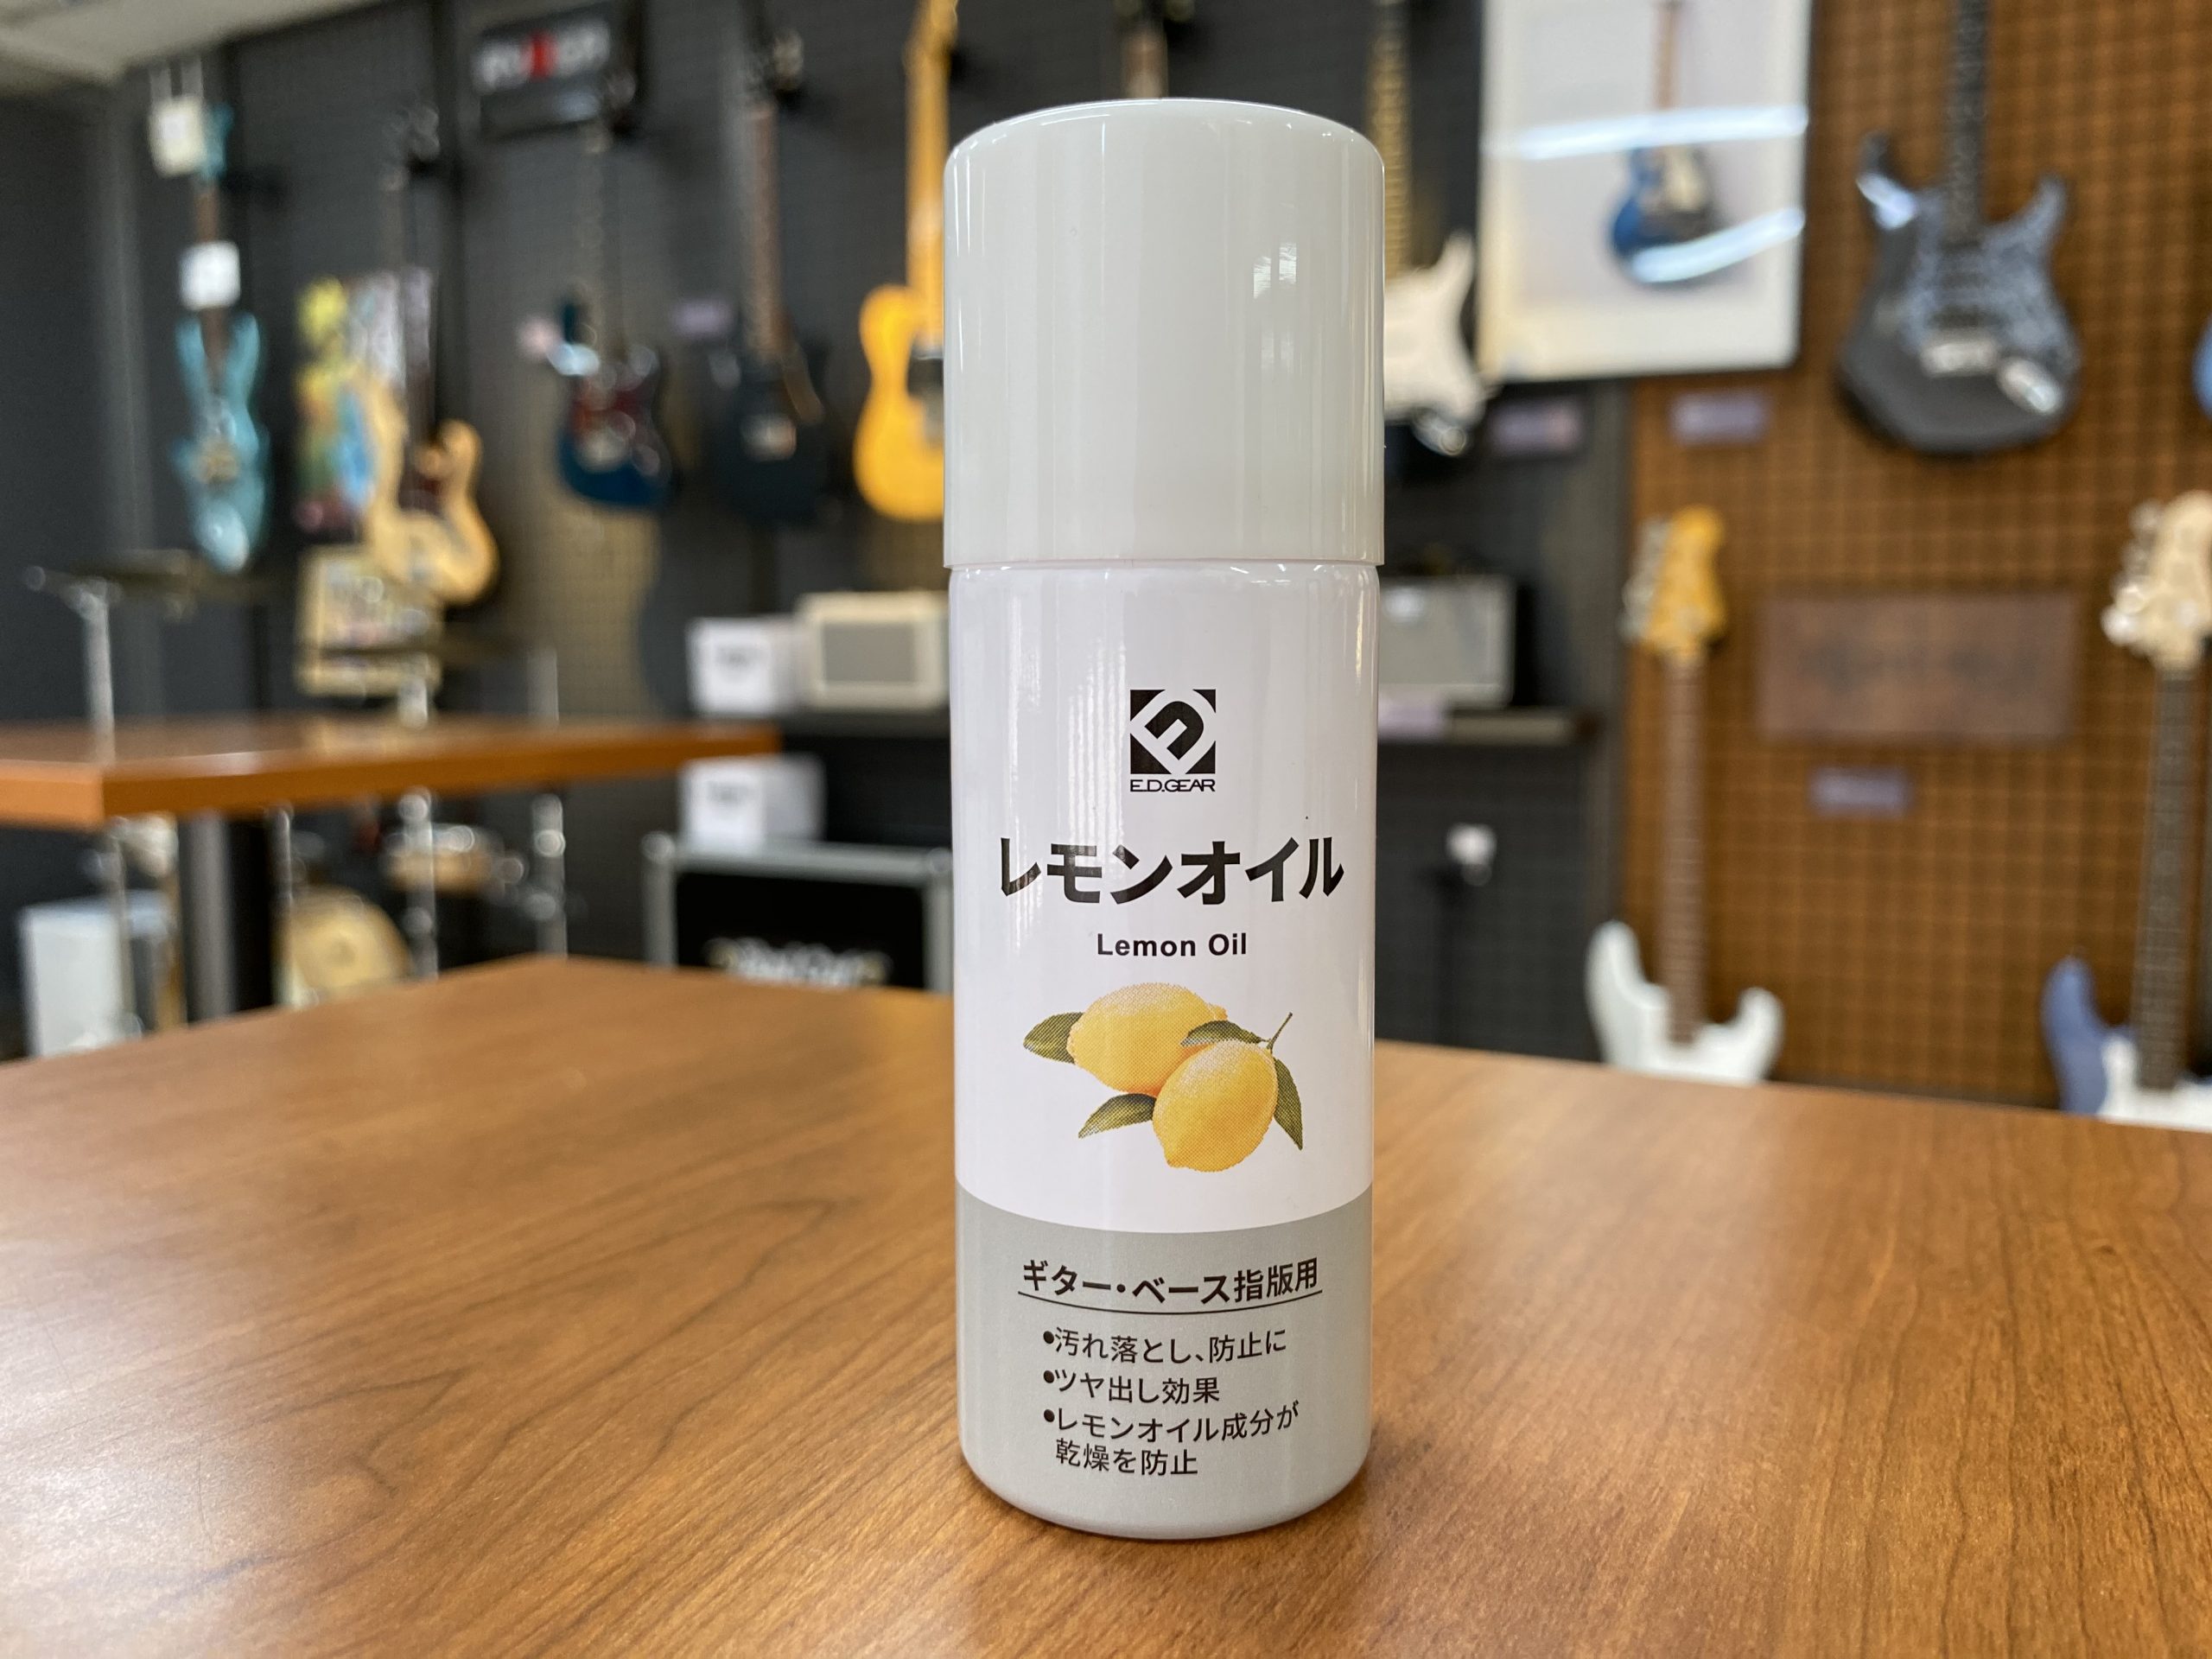 【新製品】E.D.GEAR レモンオイル(ELO-1) 新発売